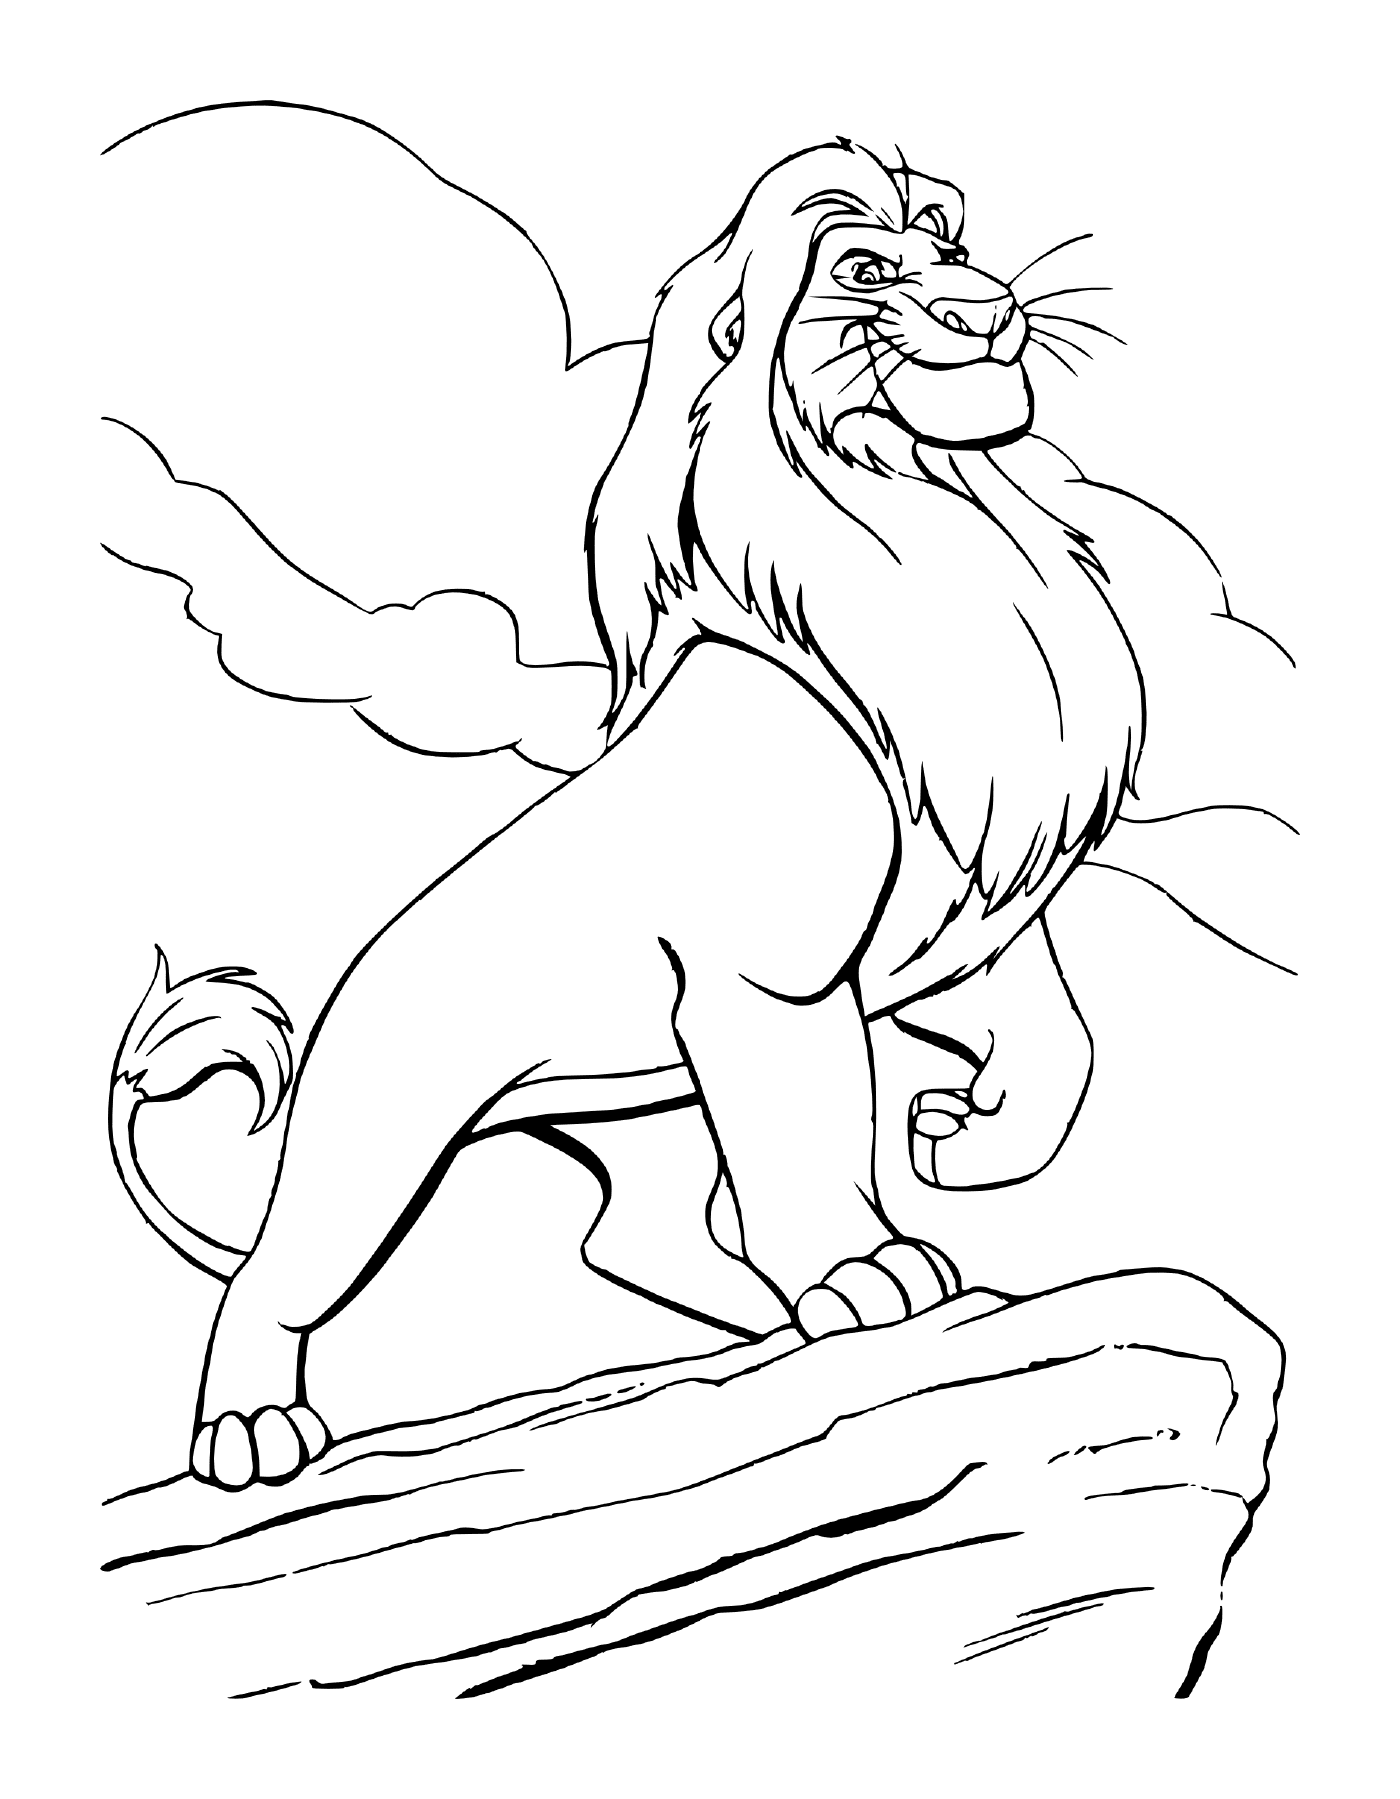  Mufasa aus dem Film Der König der Löwen 